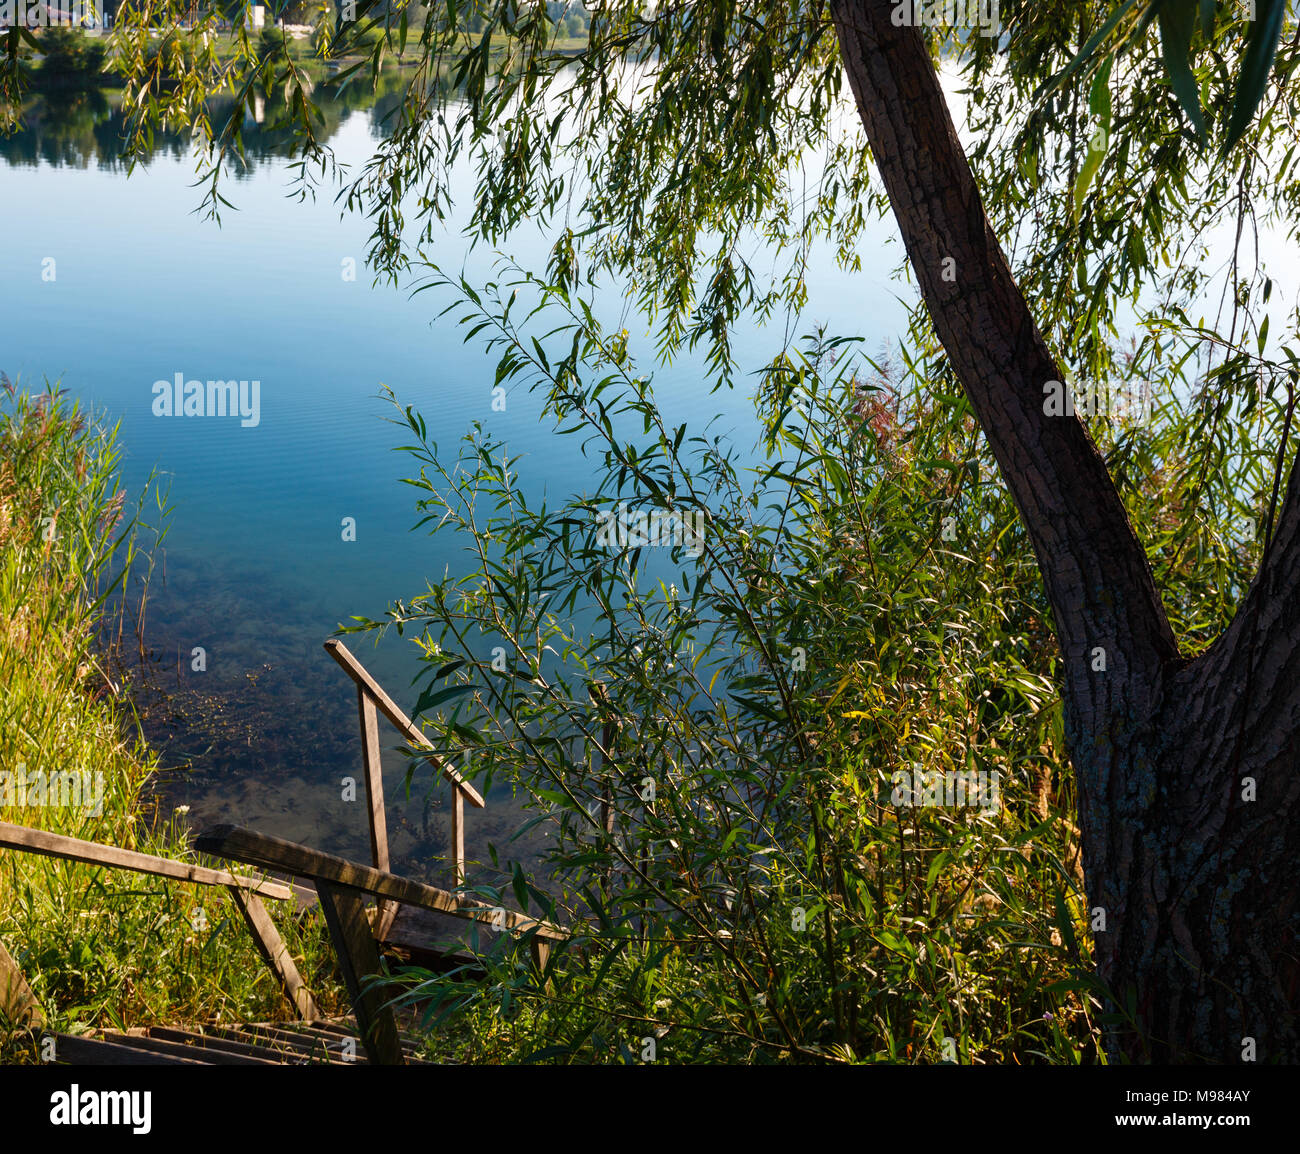 Escaliers de bois jusqu'à la pittoresque rive du lac matin d'été. Concept de la vie de campagne tranquille, éco-tourisme, le camping, la pêche. Banque D'Images